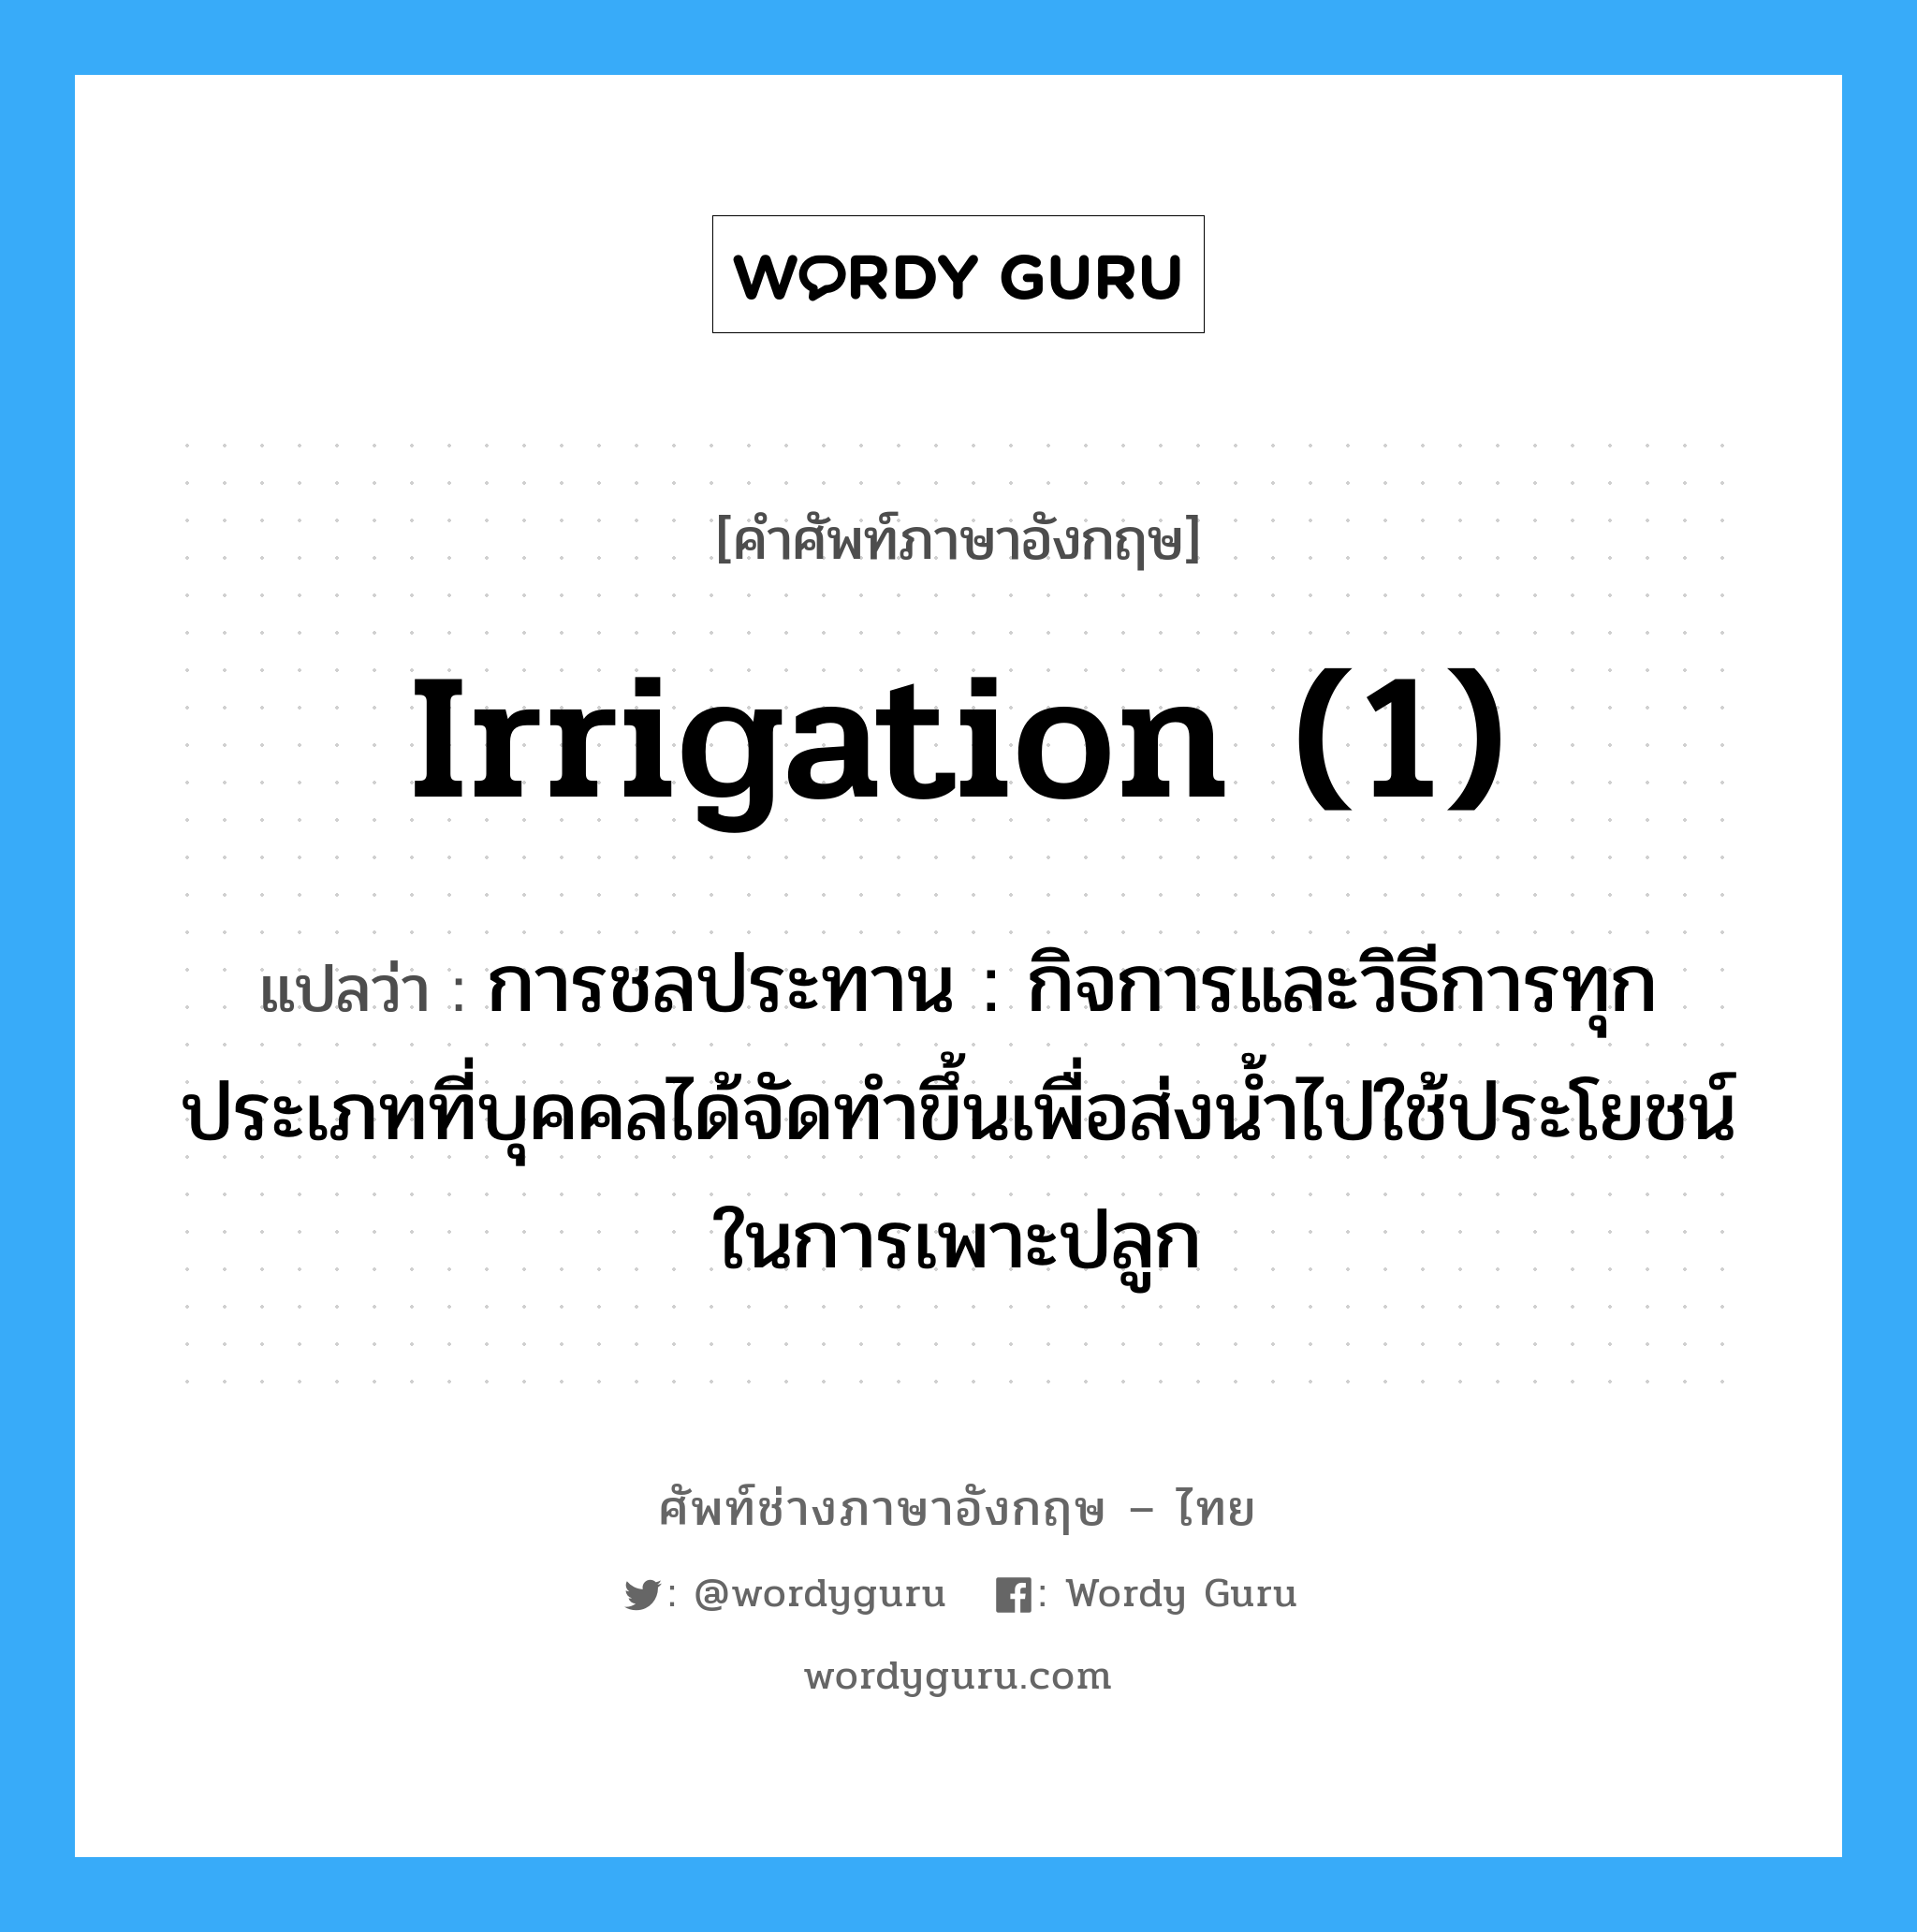 irrigation (1) แปลว่า?, คำศัพท์ช่างภาษาอังกฤษ - ไทย irrigation (1) คำศัพท์ภาษาอังกฤษ irrigation (1) แปลว่า การชลประทาน : กิจการและวิธีการทุกประเภทที่บุคคลได้จัดทำขึ้นเพื่อส่งน้ำไปใช้ประโยชน์ในการเพาะปลูก